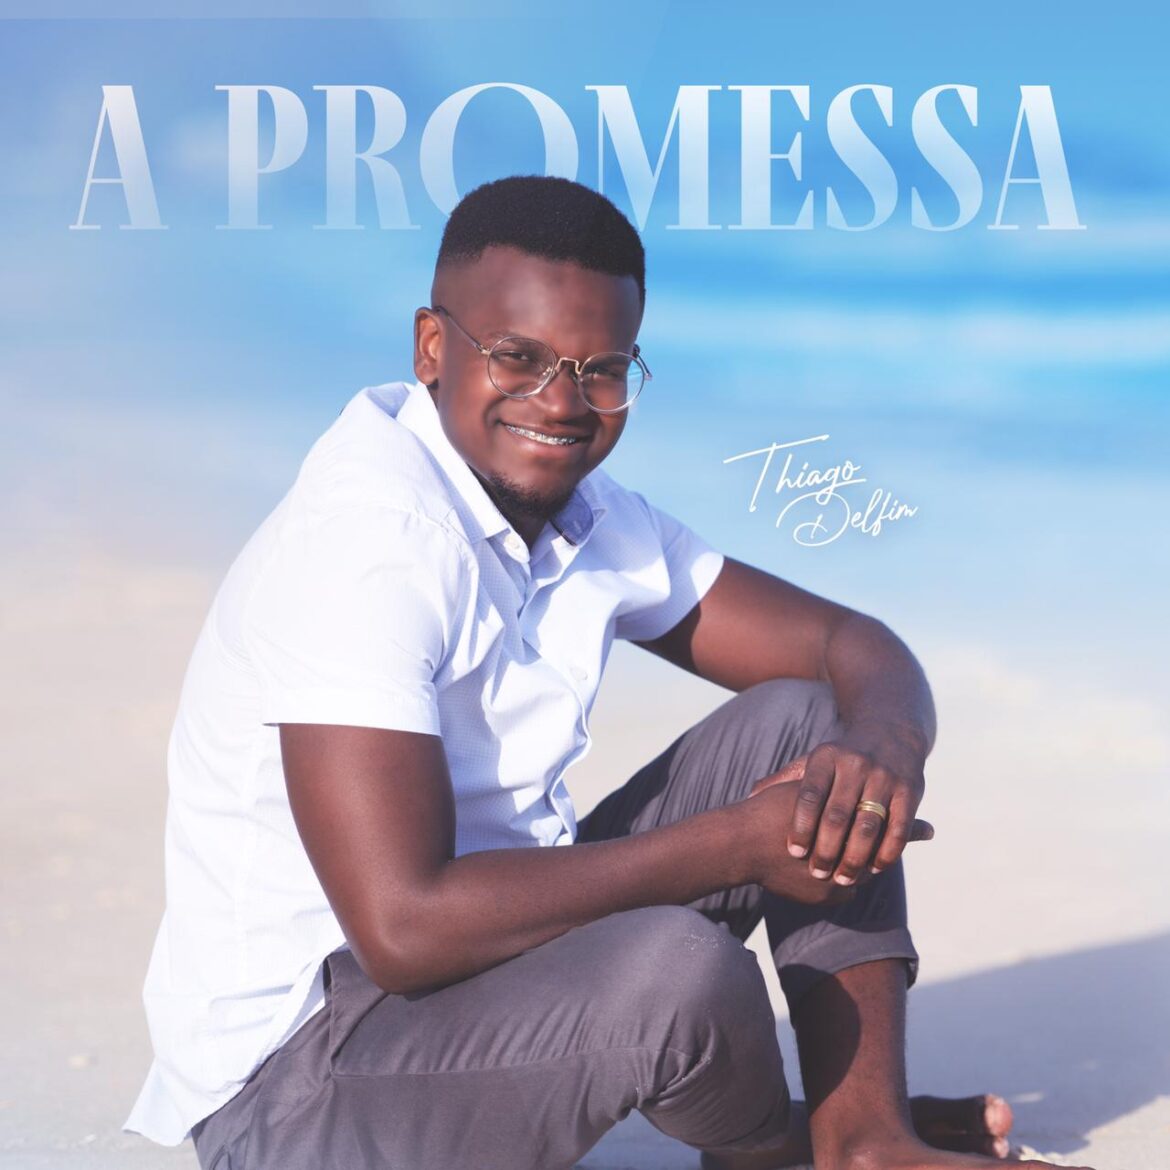 Thiago Delfim lança “A Promessa”, primeira música autoral pela Central Gospel Music